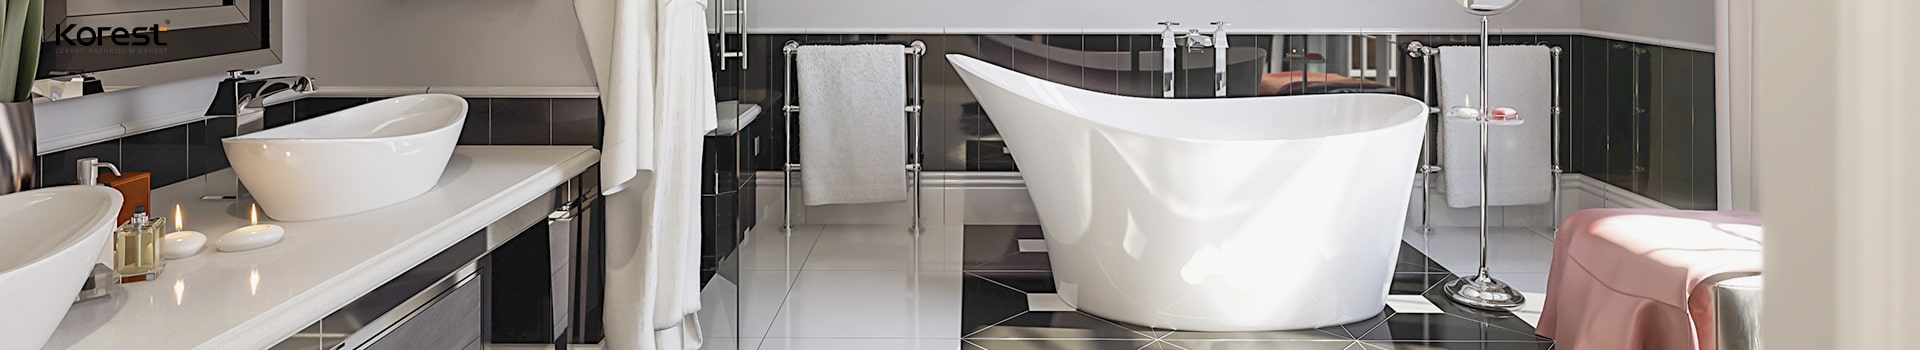 Tổng hợp các loại thiết bị vệ sinh thông minh dành cho phòng tắm hiện đại